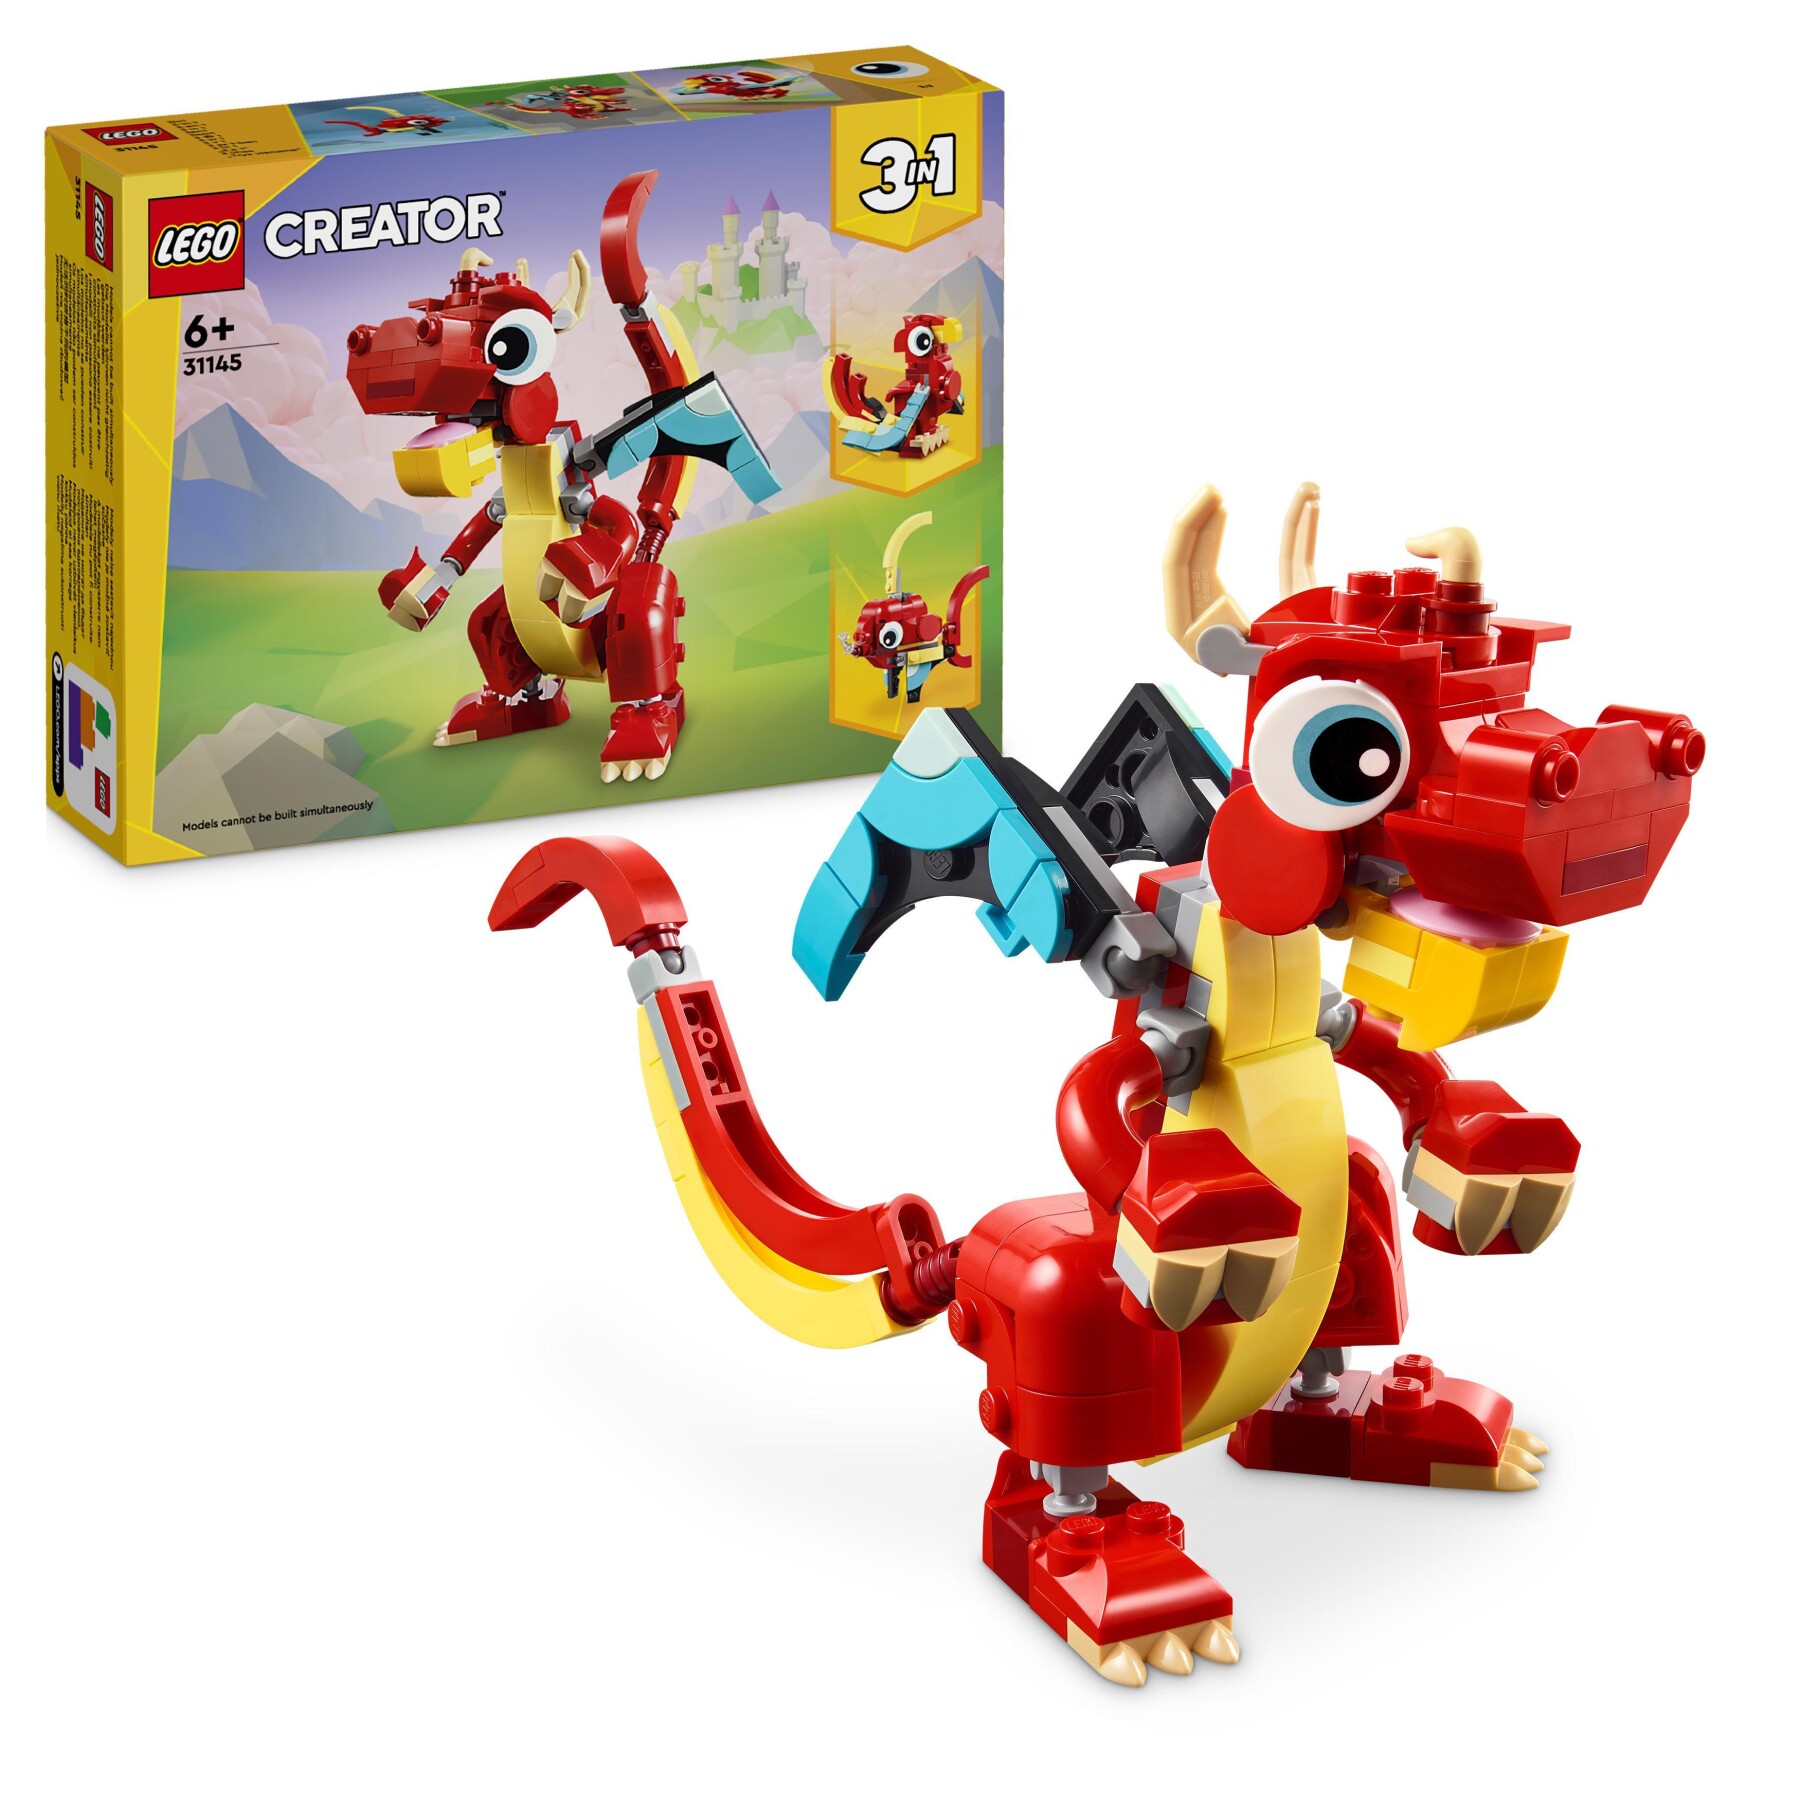 LEGO Creator 31145 3in1 Drago Rosso, Giochi per Bambini di 6+ Anni, Action  Figure Ricostruibile in Pesce e Fenice Giocattolo - Toys Center